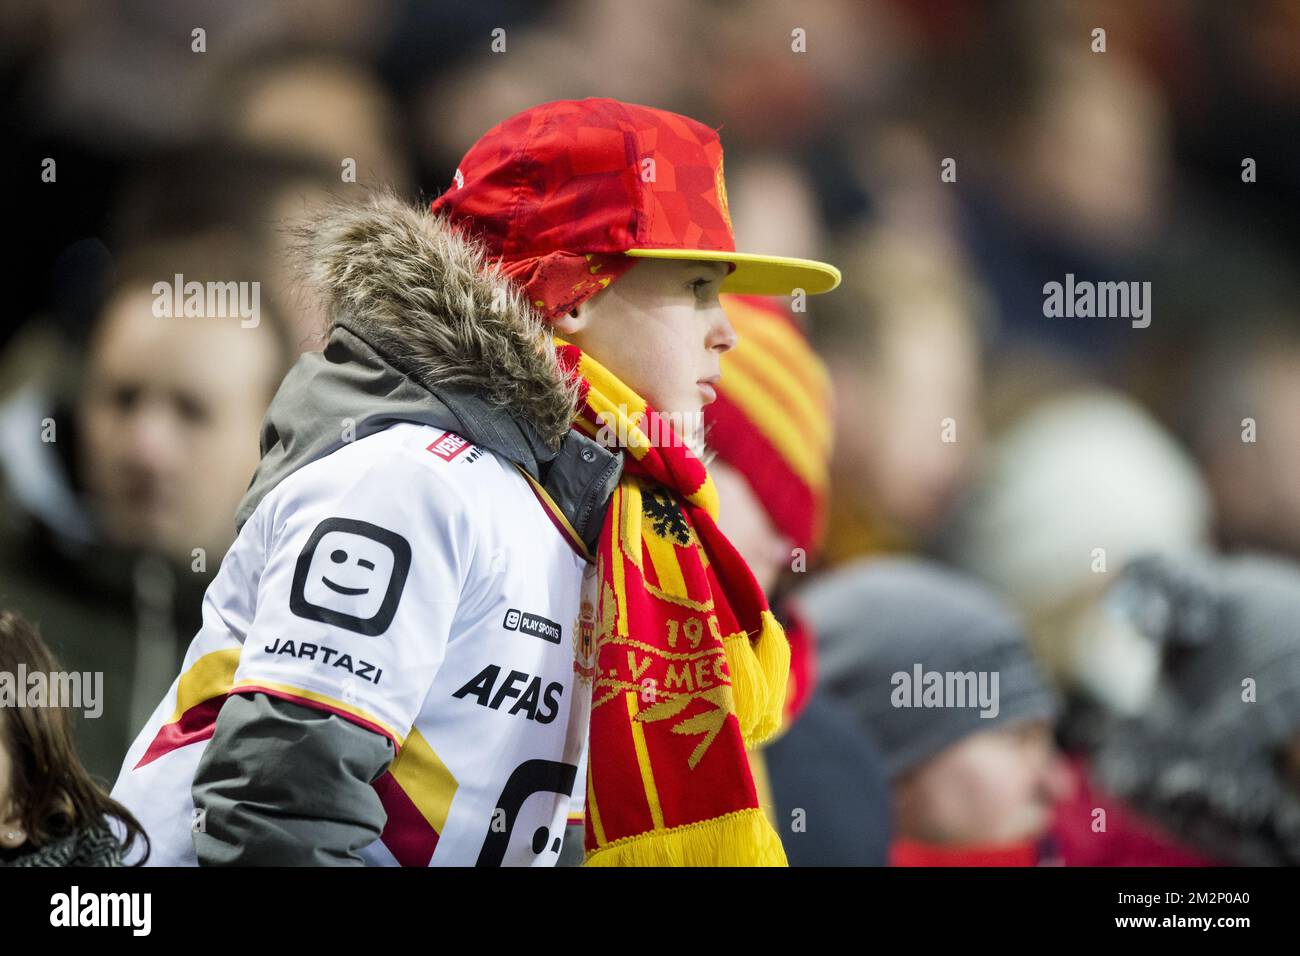 Le supporter de Mechelen photographié lors d'un match de football entre KV Mechelen et Roeselare, vendredi 18 janvier 2019 à Mechelen, le 22nd jour de la division Proximus League 1B du championnat belge de football. BELGA PHOTO JASPER JACOBS Banque D'Images